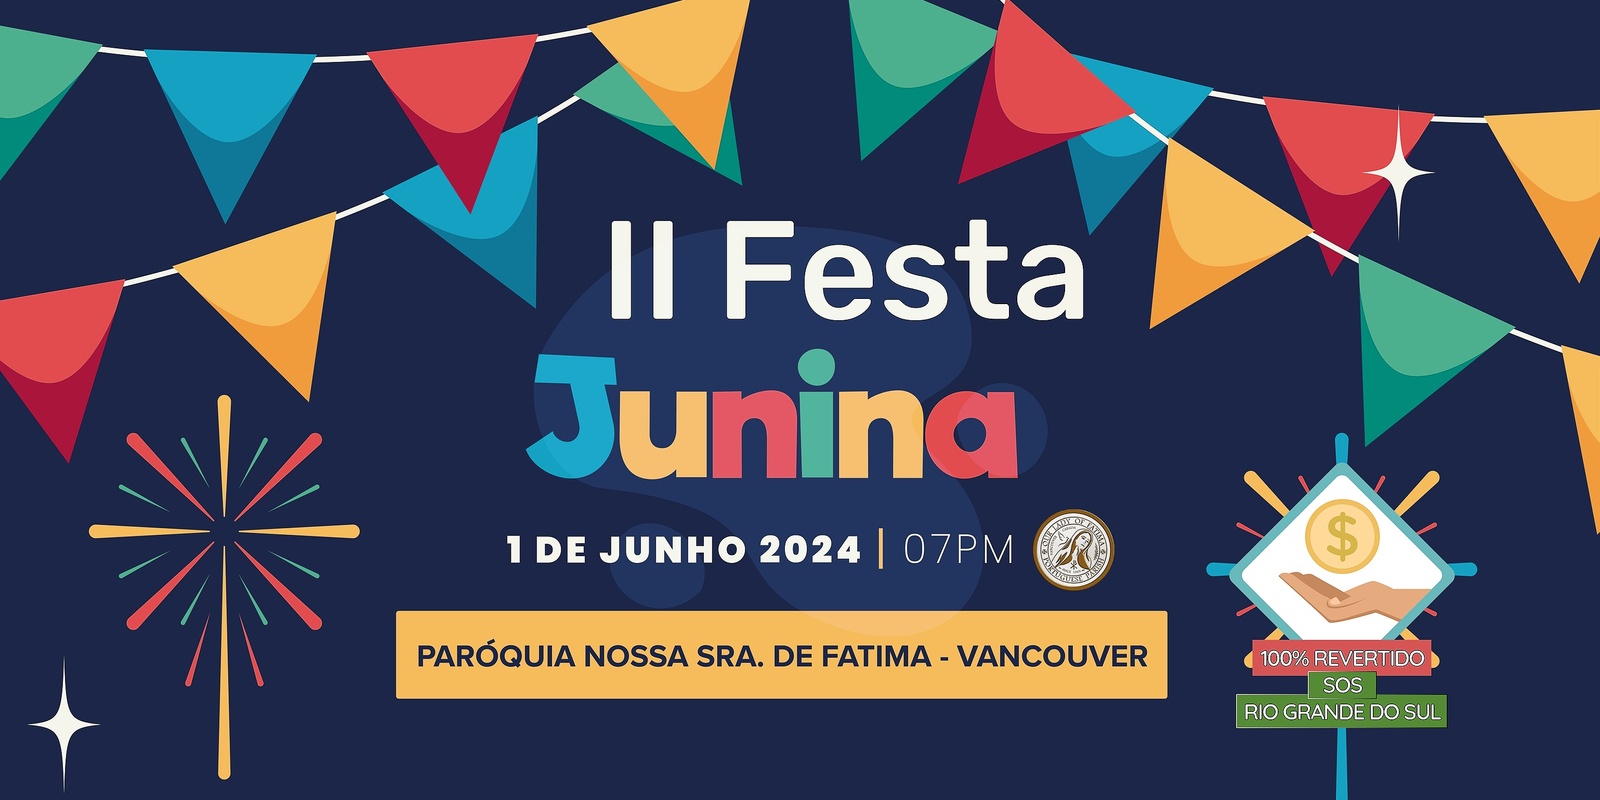 Banner image for II FESTA JUNINA - Our Lady of Fatima Vancouver + SOS RIO GRANDE DO SUL